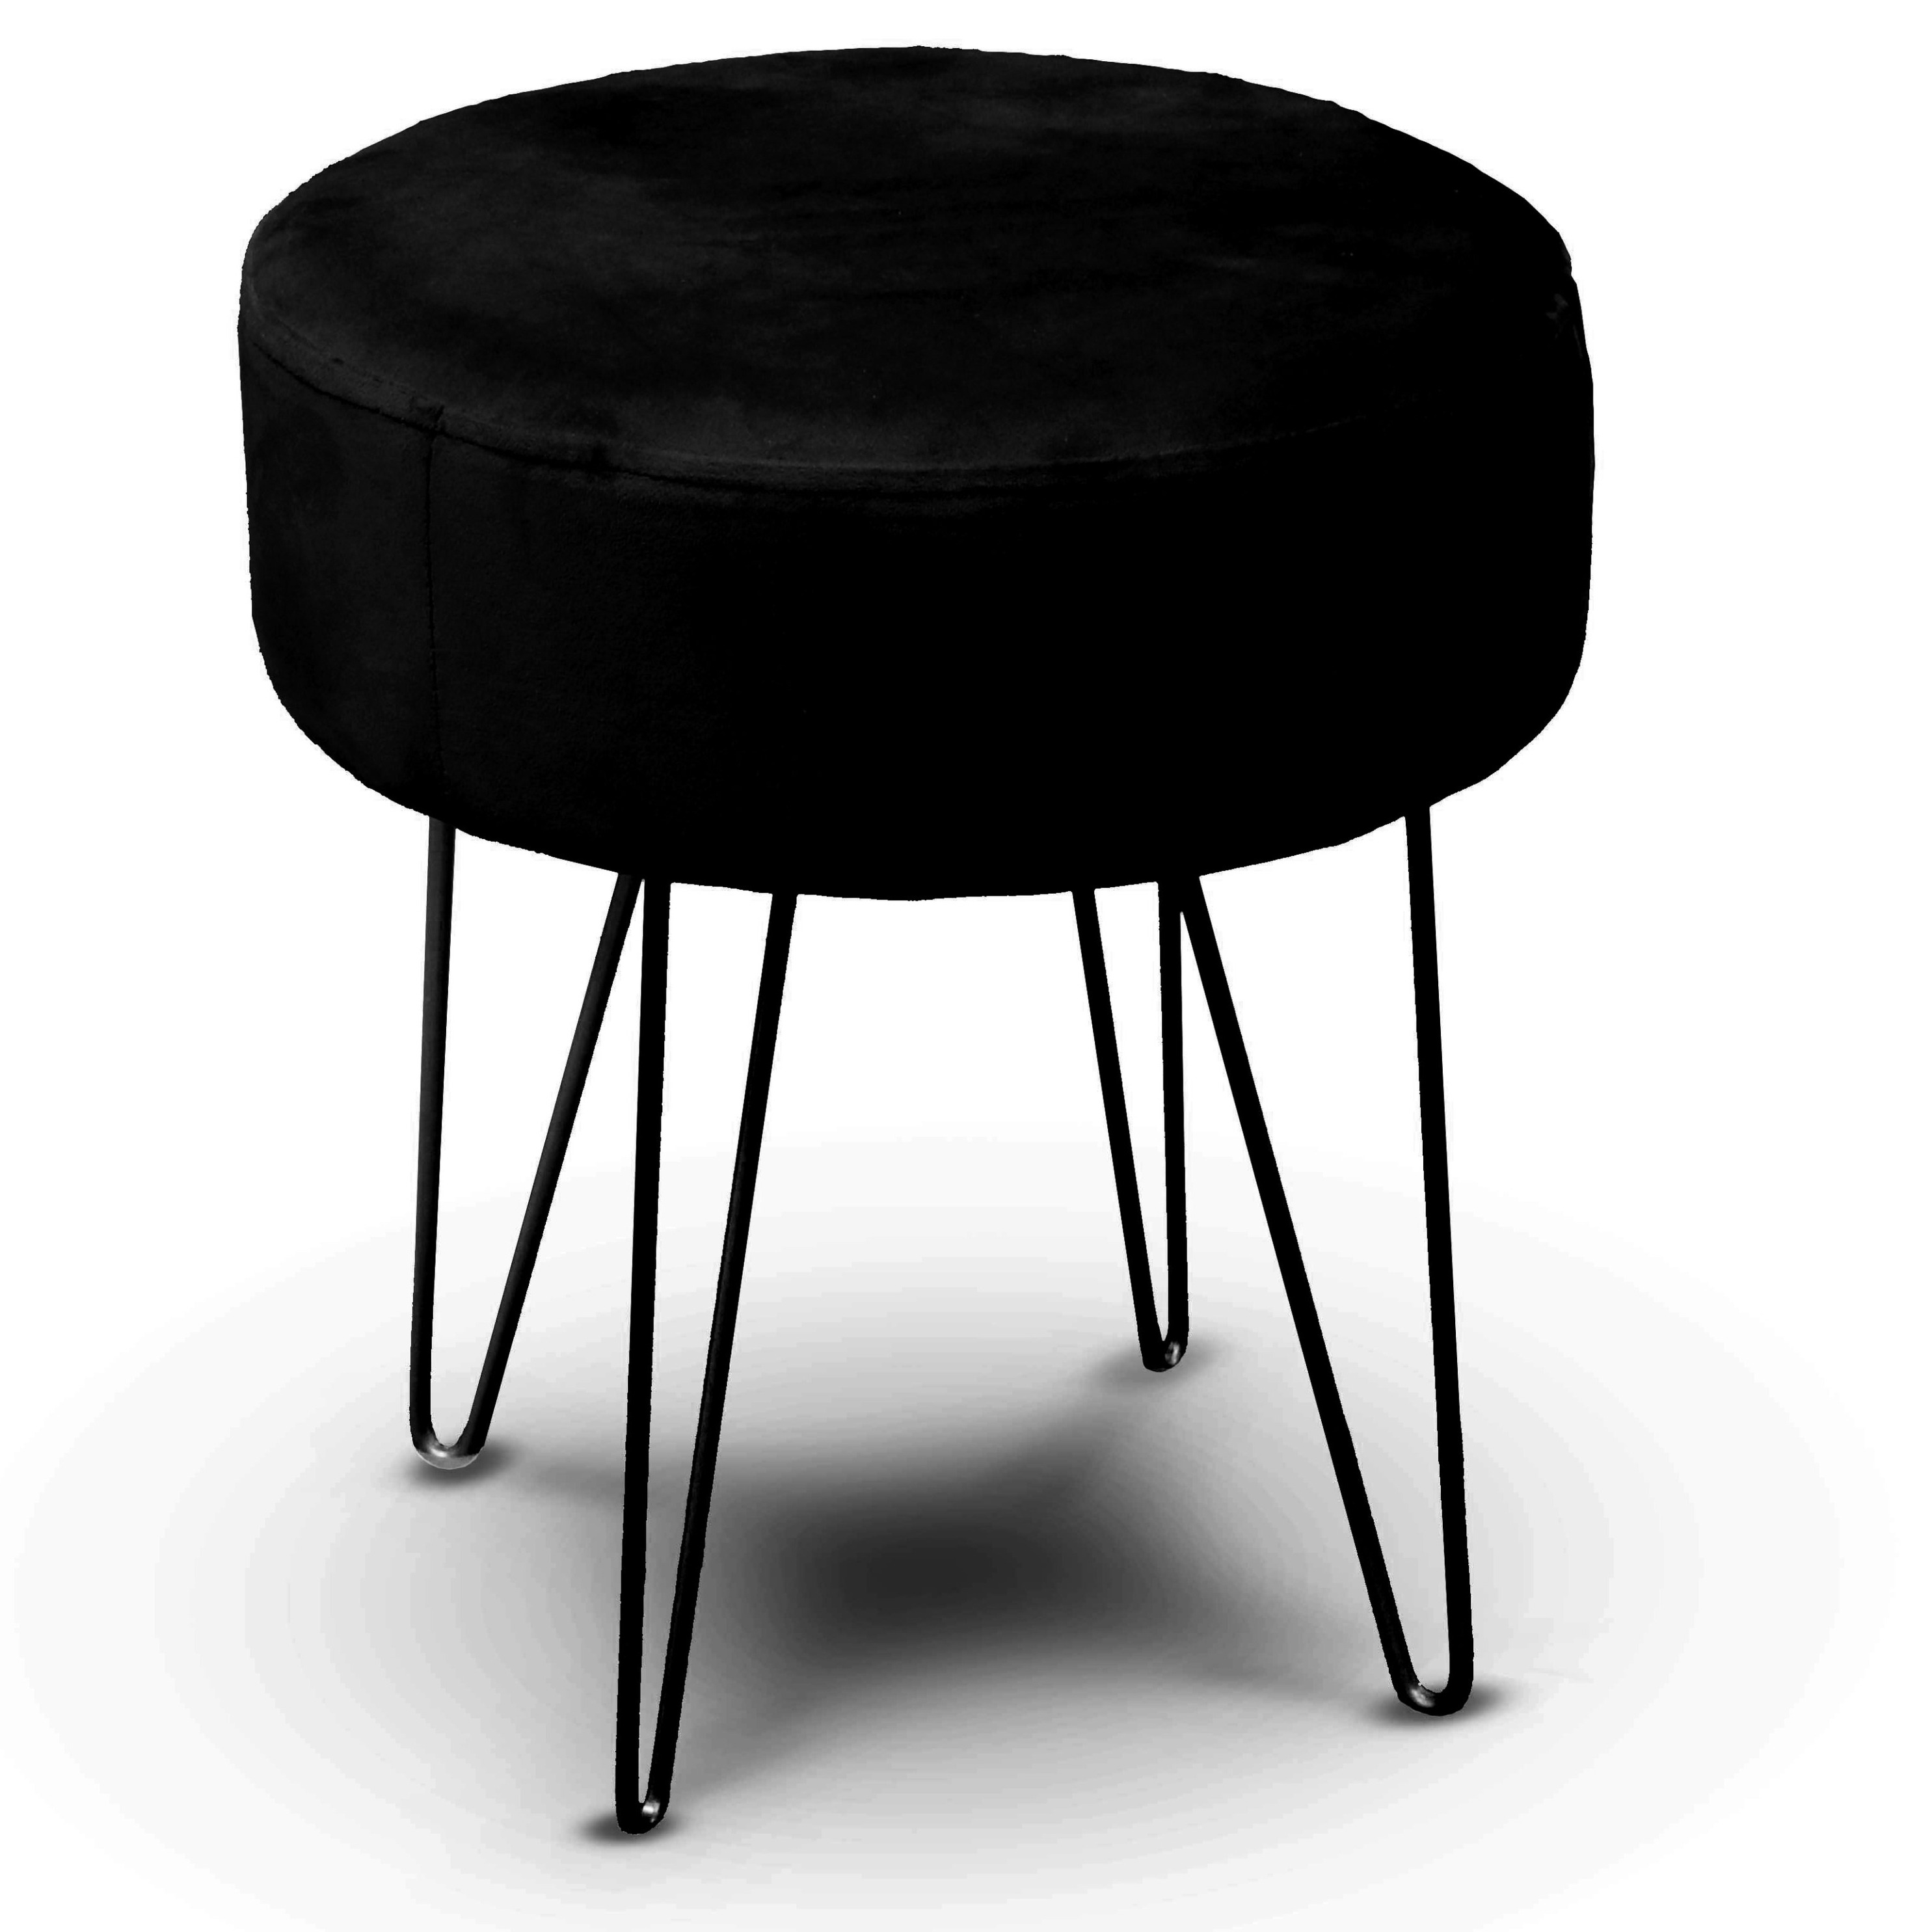 Velvet kruk Davy - zwart - metaal/stof - D35 x H40 cm - bijzet stoeltjes